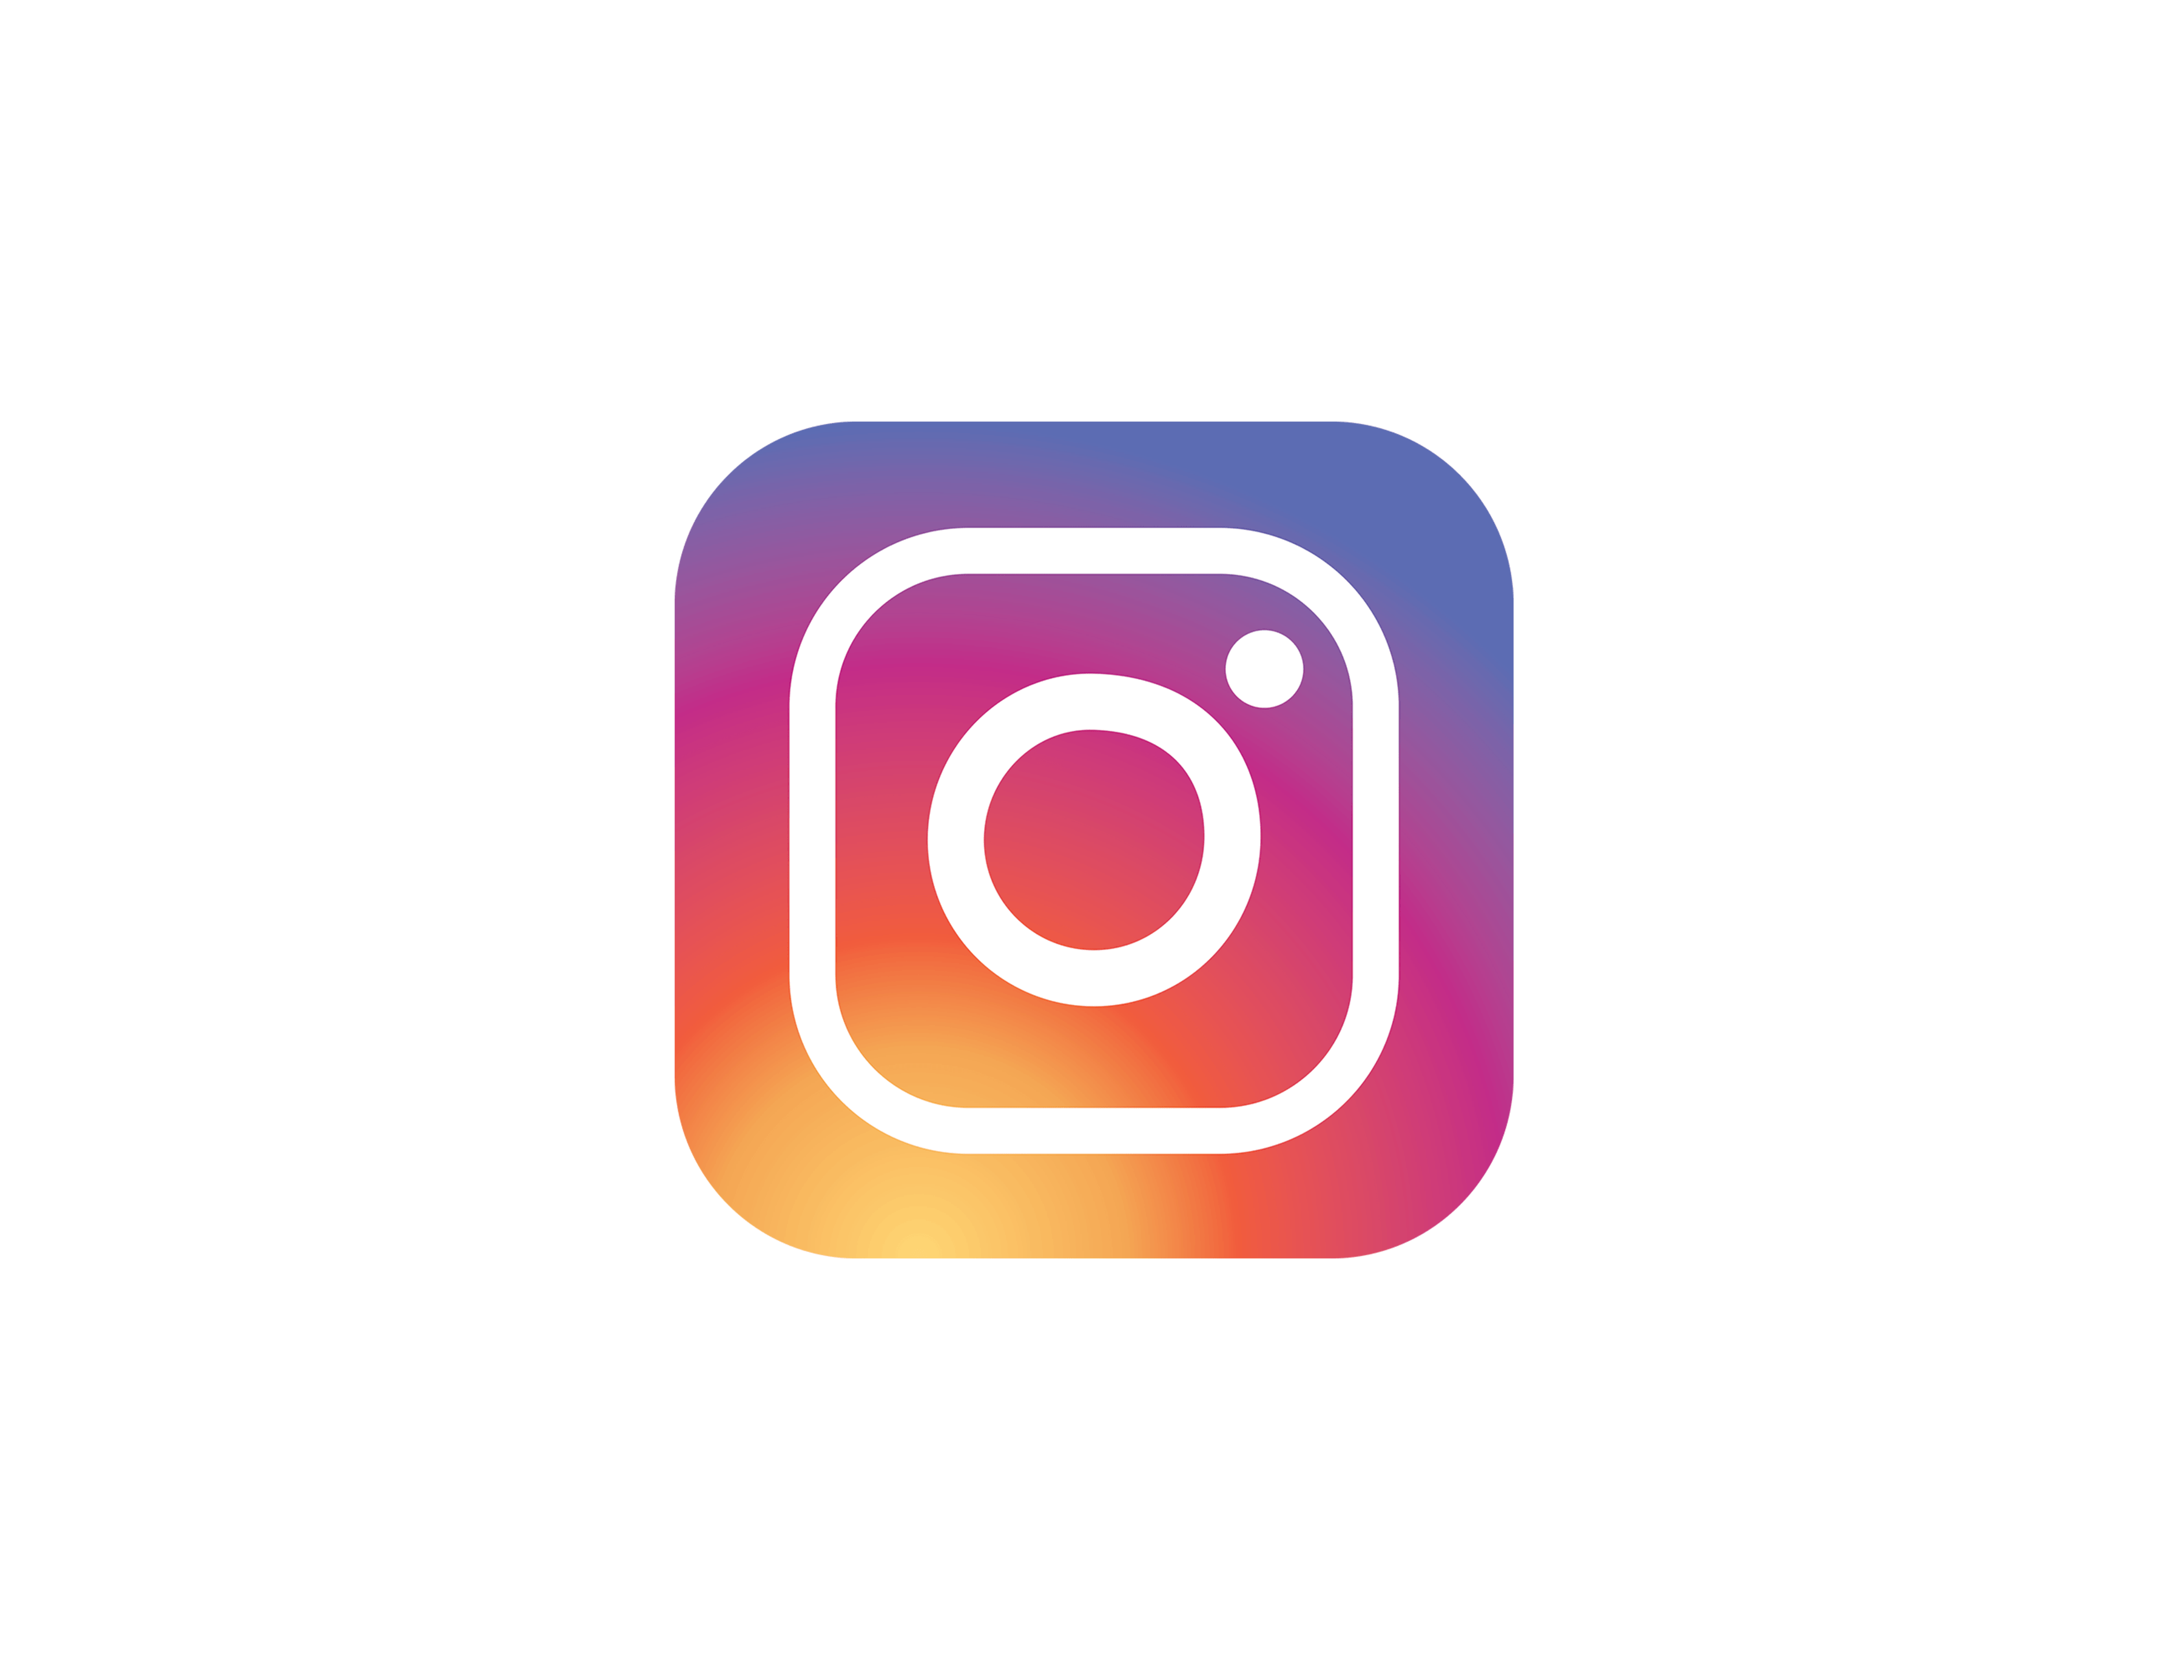 Large Instagram Logo - Instagram-logo-large - Source Medical